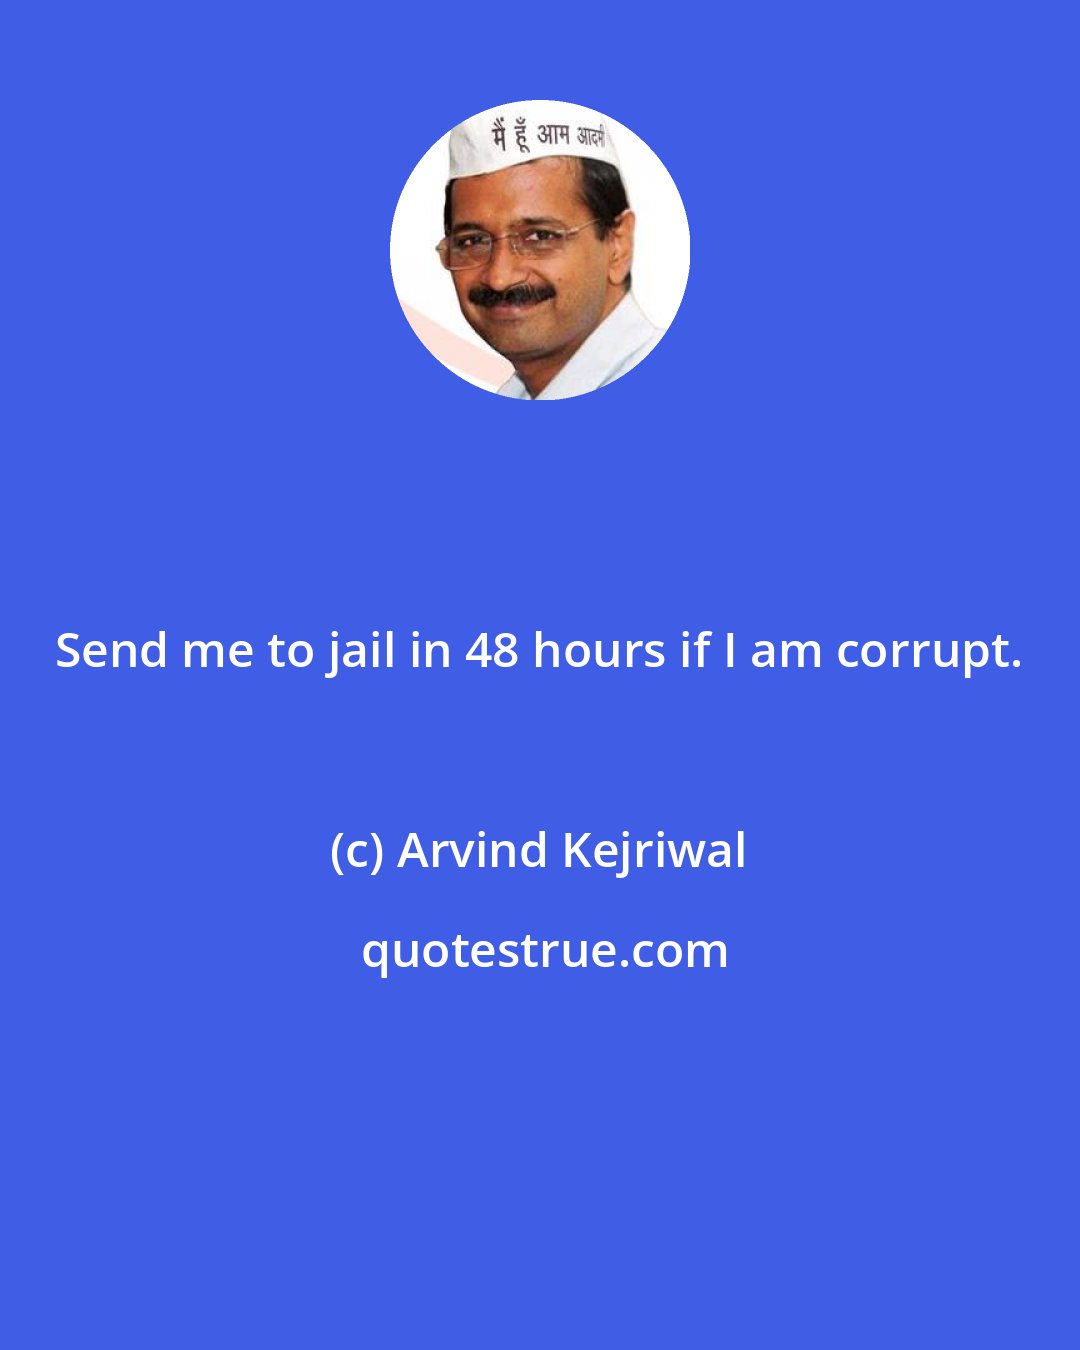 Arvind Kejriwal: Send me to jail in 48 hours if I am corrupt.